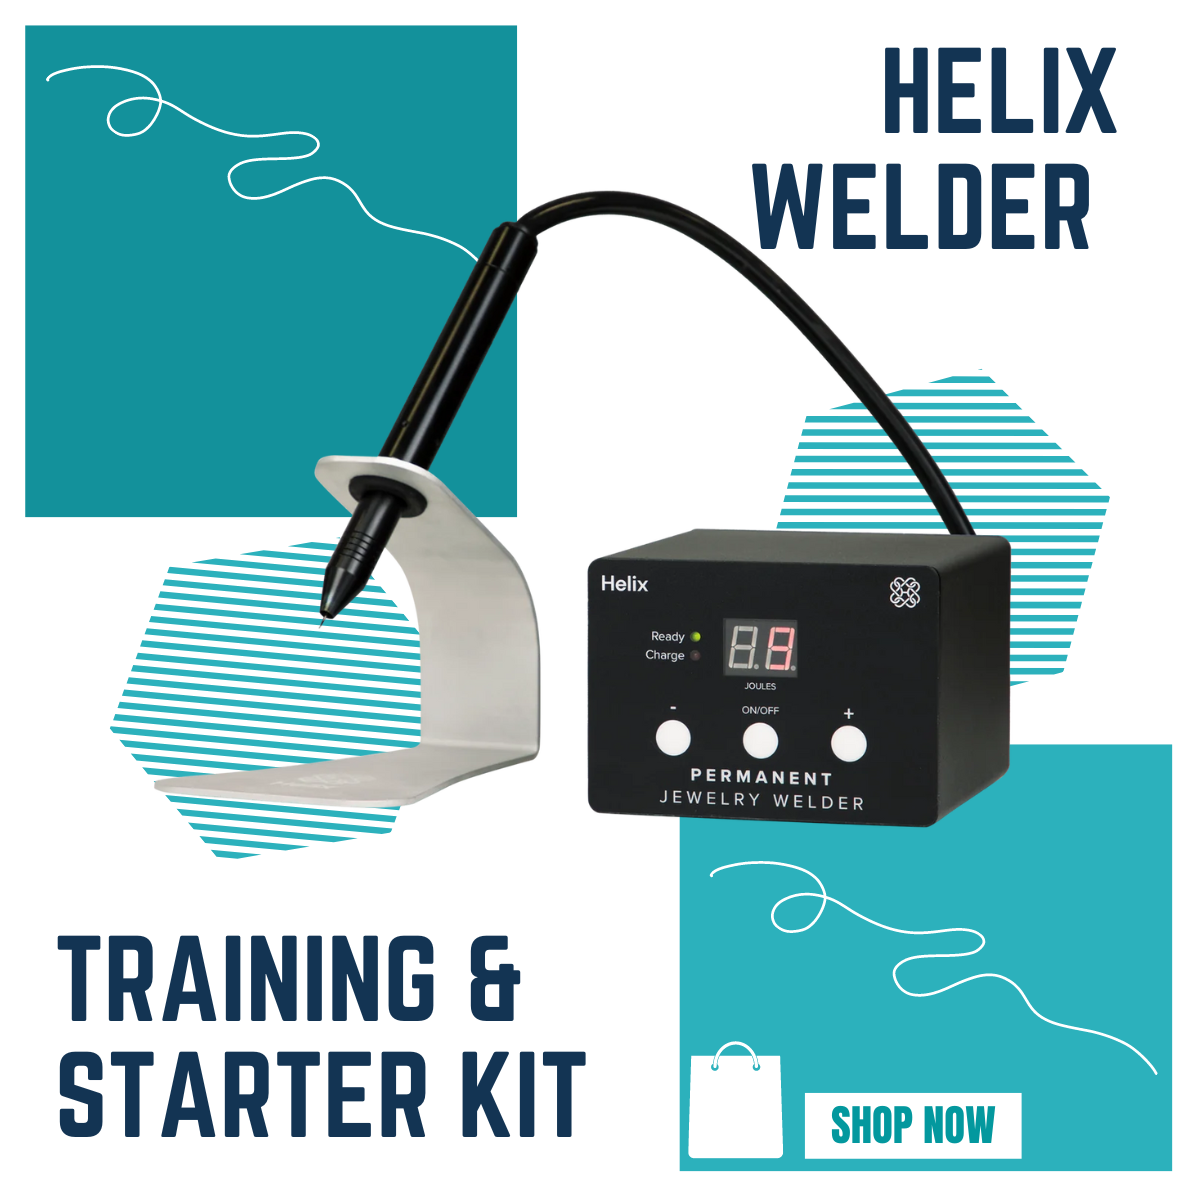 Helix welder graphic